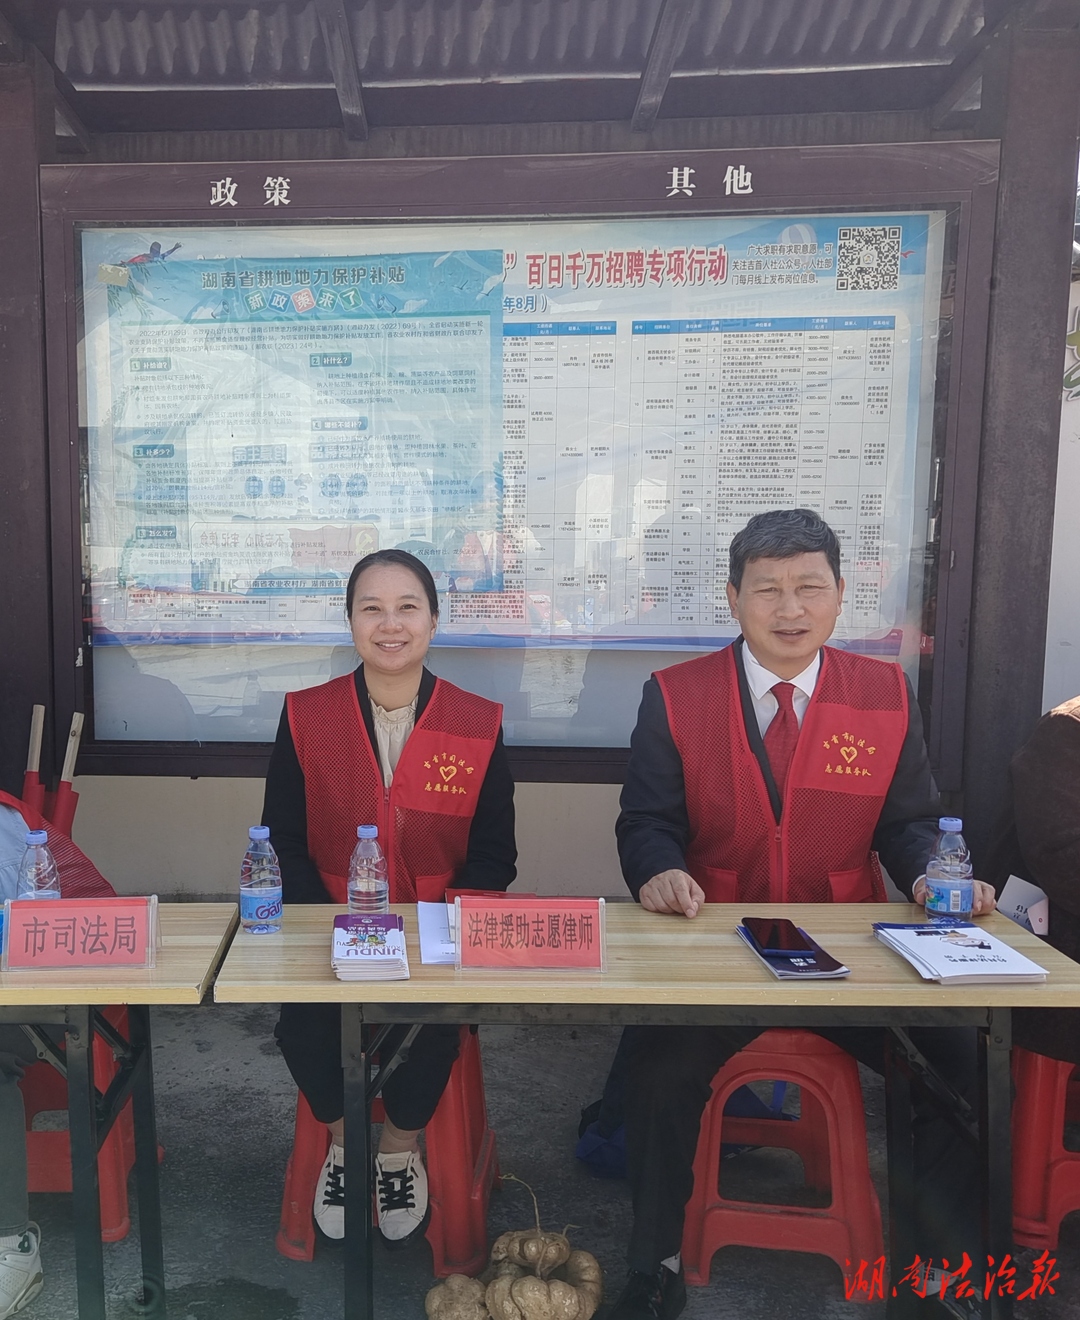 志愿基层行 普法惠民生 ——“1+1”中国法律援助志愿者潘鸿宇律师在湖南吉首参加普法宣传活动